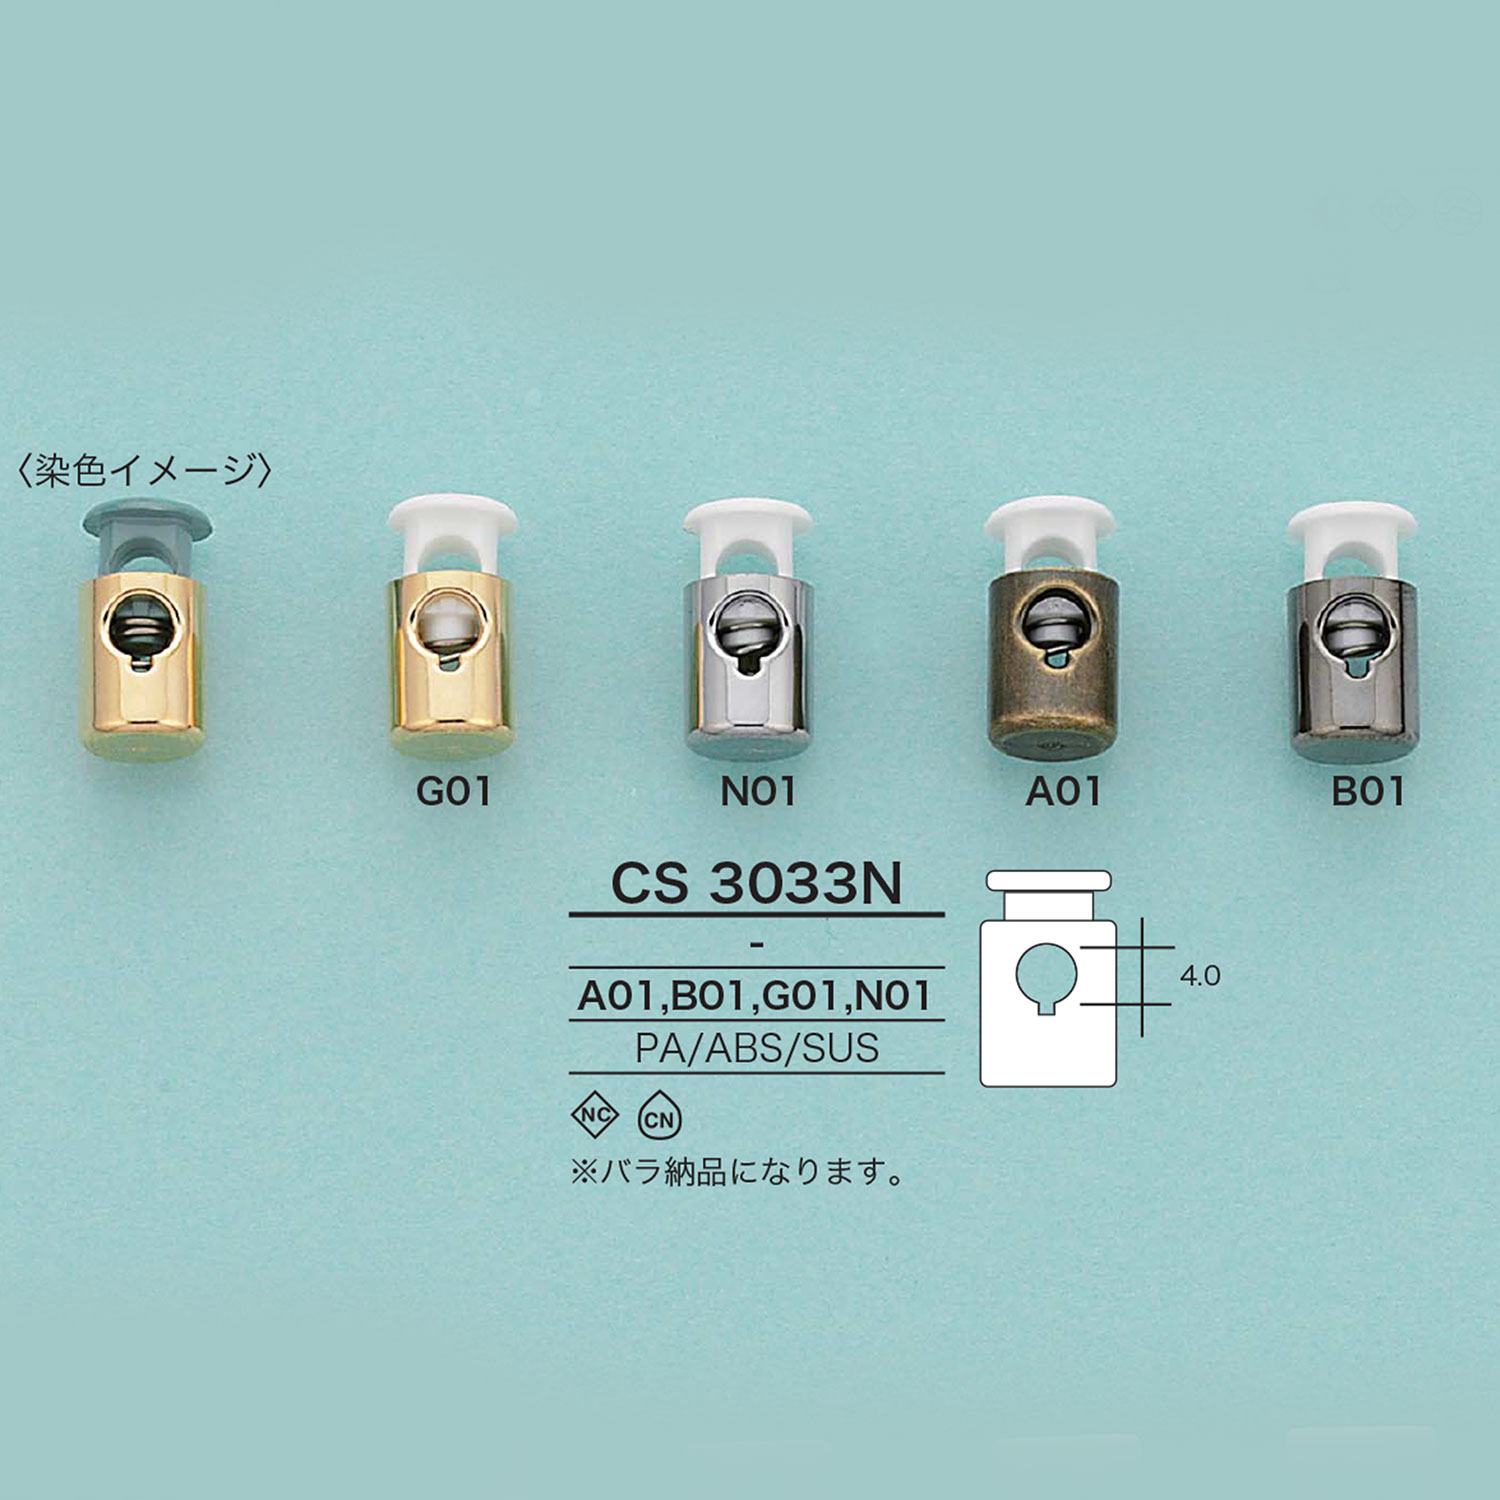 CS3033N 绳子锁[扣和环] 爱丽丝纽扣